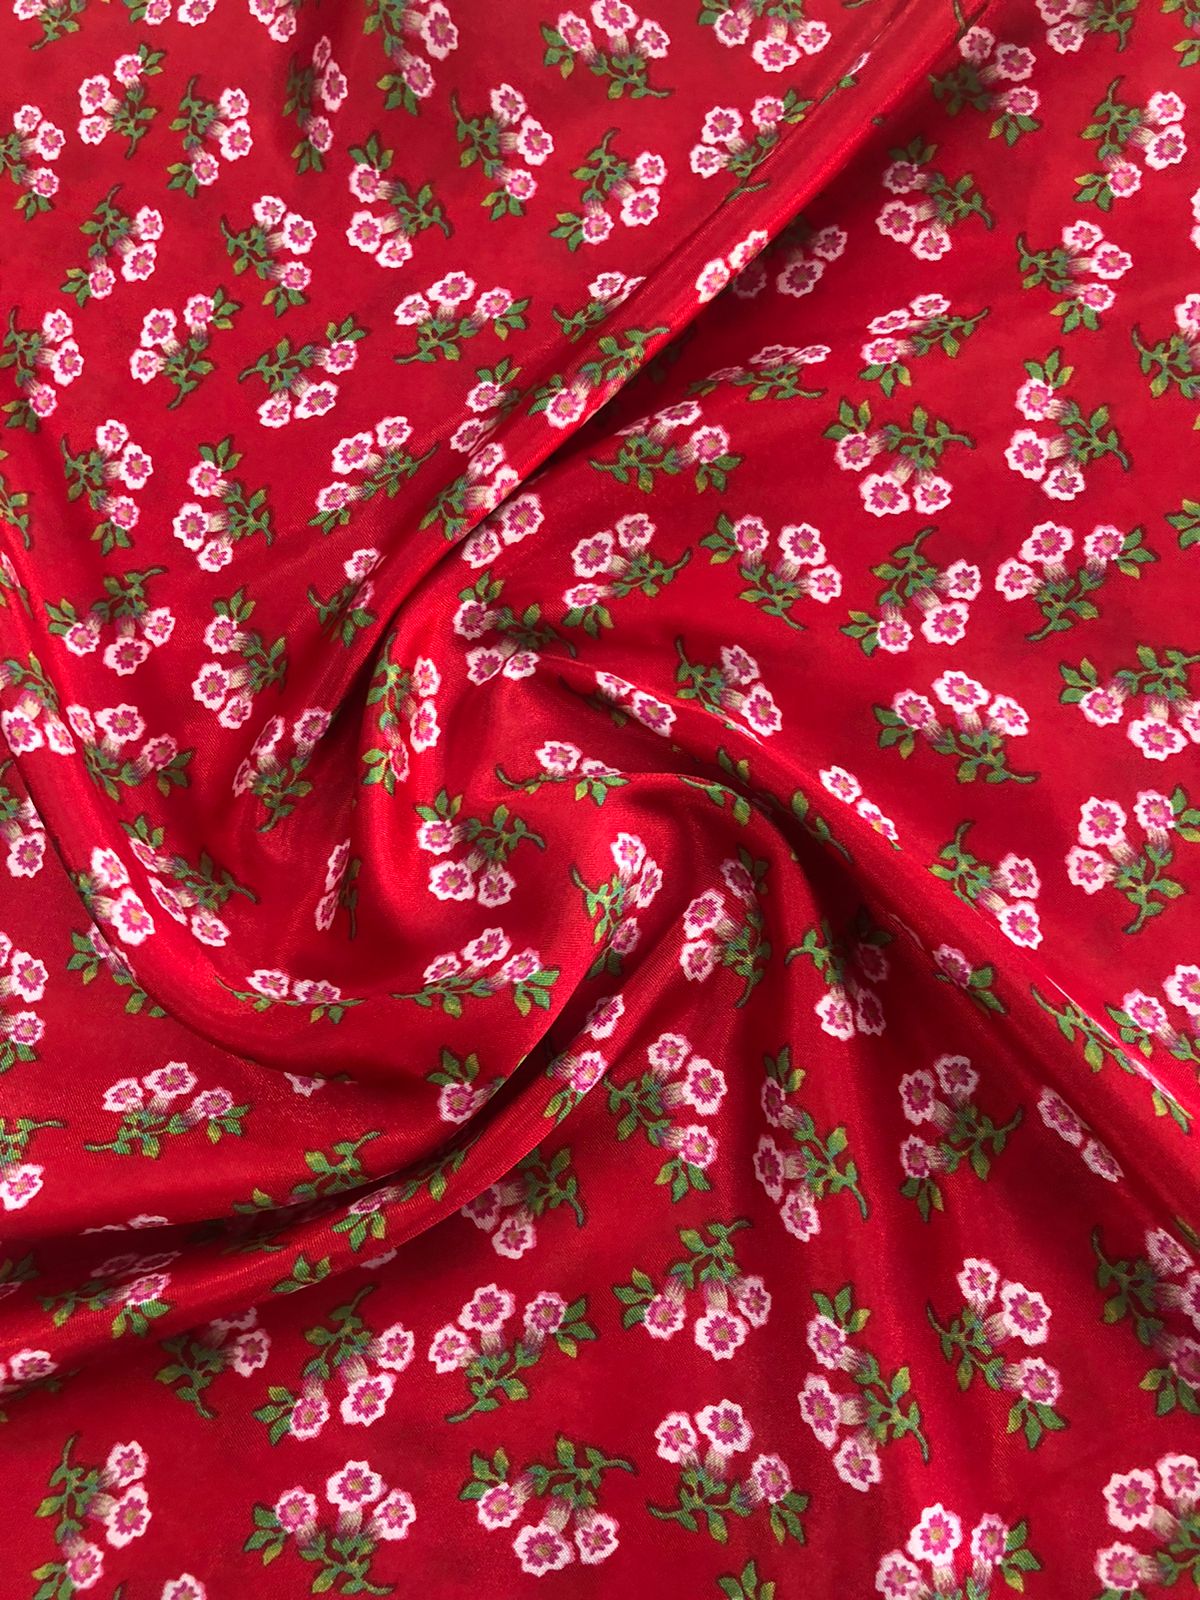 tecido cetim charmousse estampado floral pequeno fundo vermelho